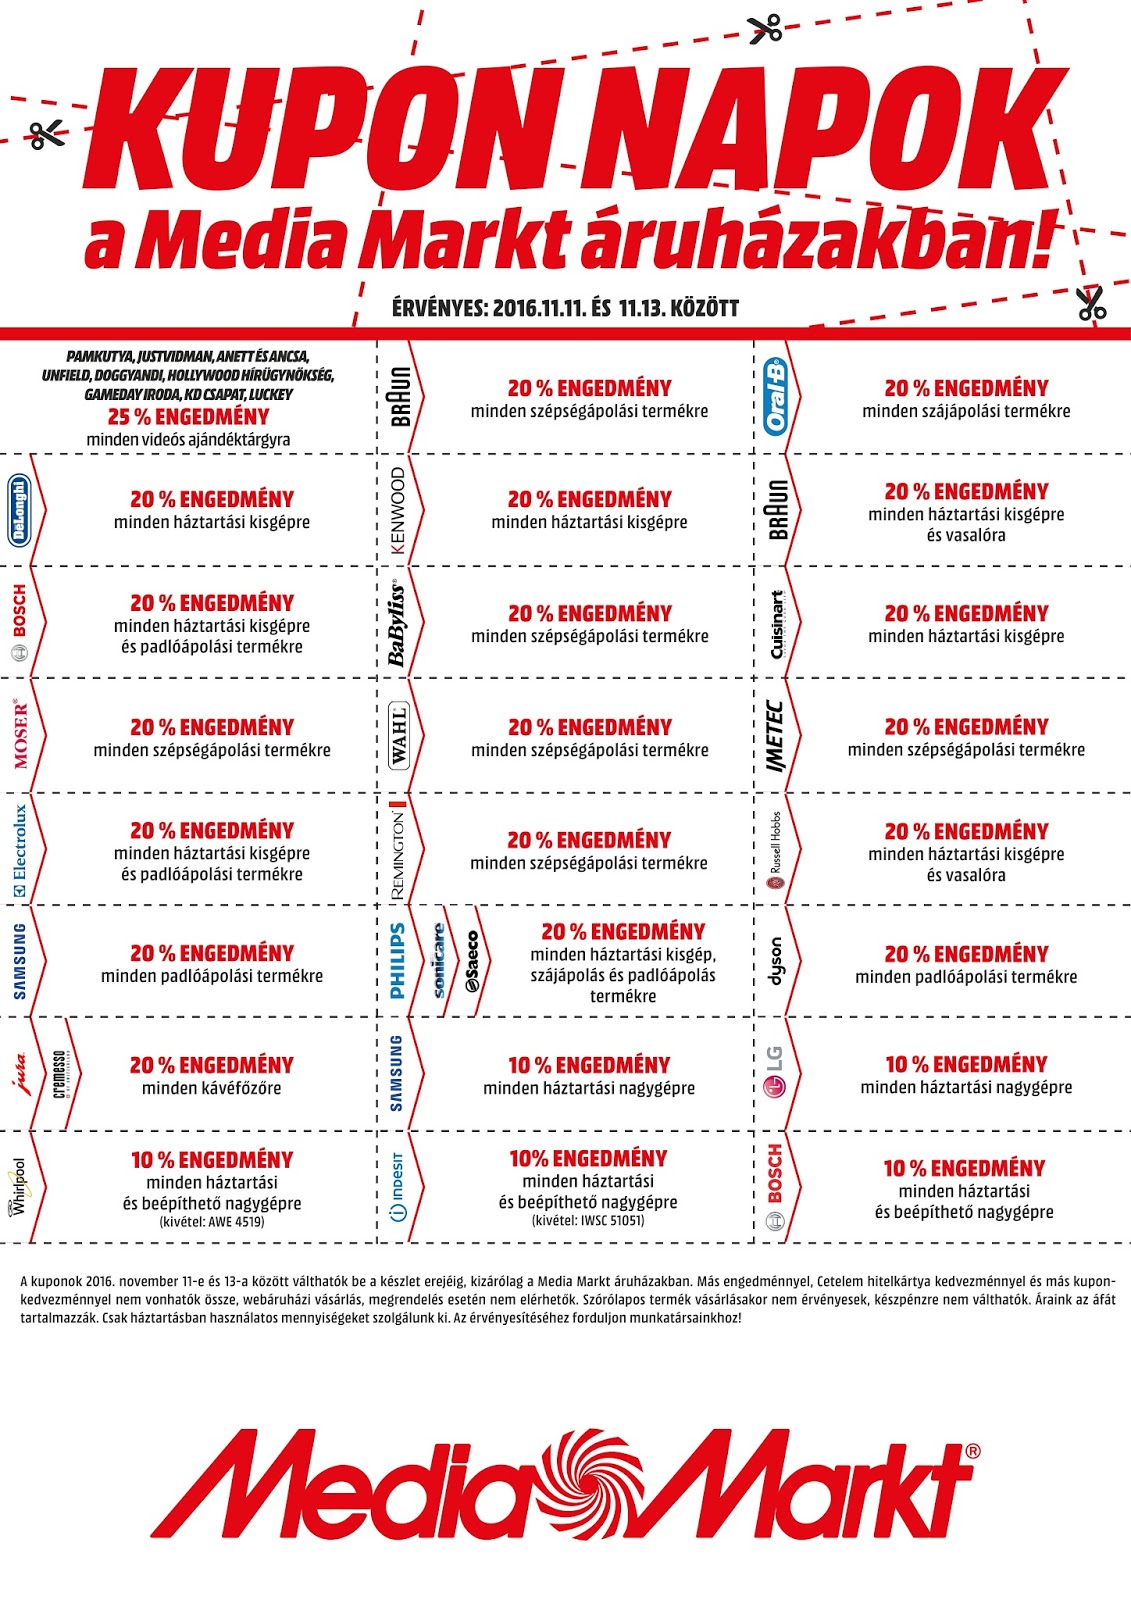 Krijgsgevangene Aanpassing les Bodor Mária: Media Markt kupon napok 2016. november 11-13.